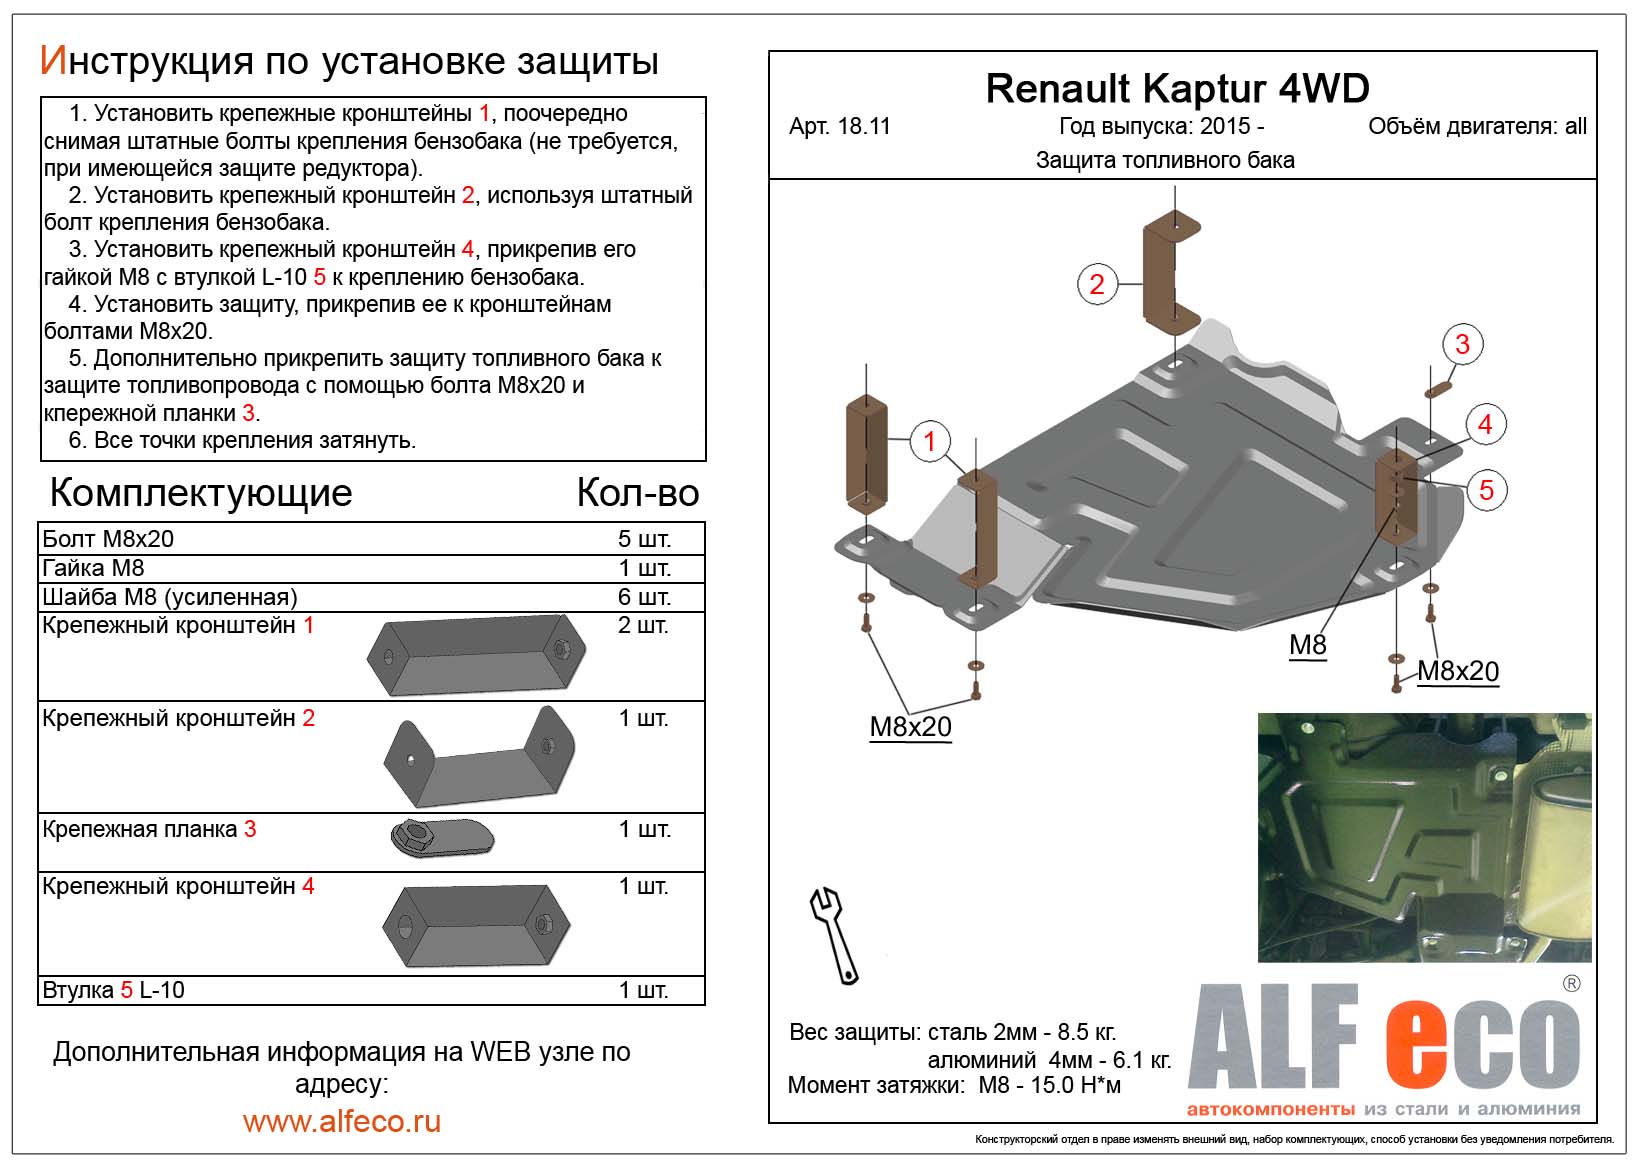 Renault Duster/Kaptur 2015-/Terrano рейсталинг 2016-V-1.6-2.0 4WD  защита топливного бака сталь 2мм